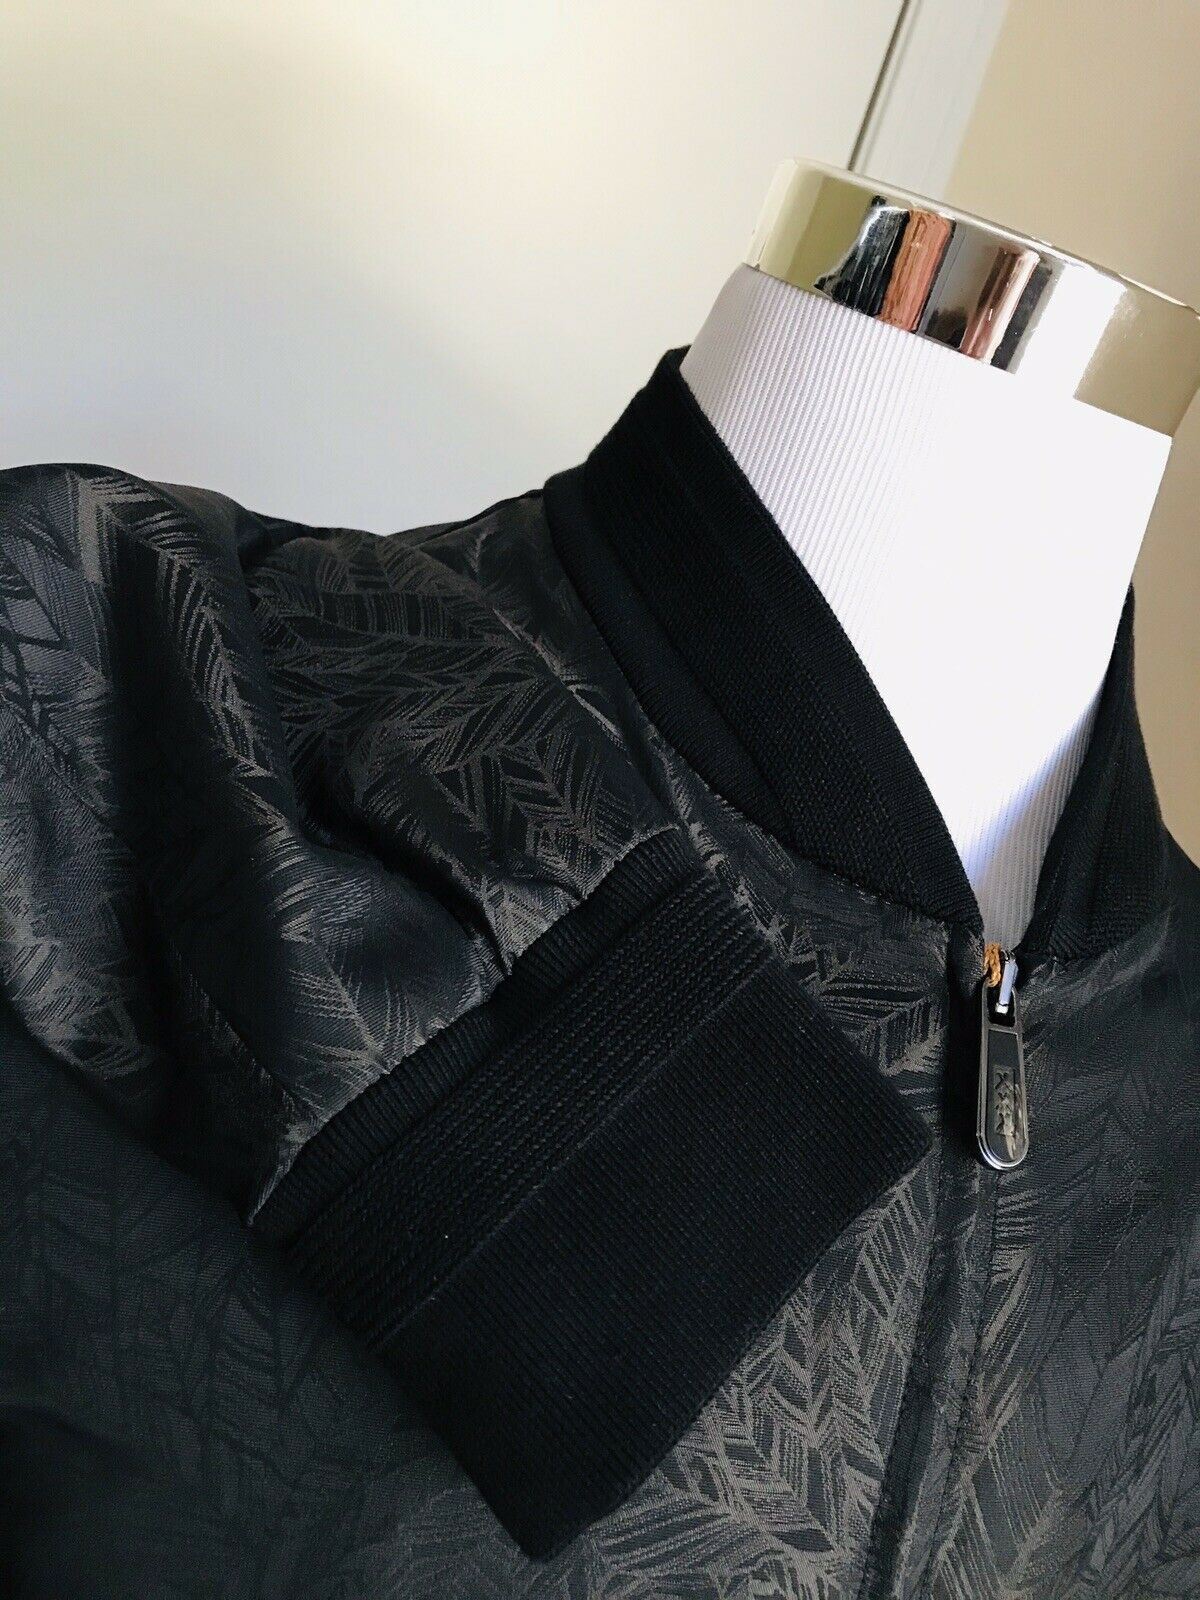 New $2295 Ermenegildo Zegna Couture Jacket Coat DK Black 40 US ( 50 Eu)